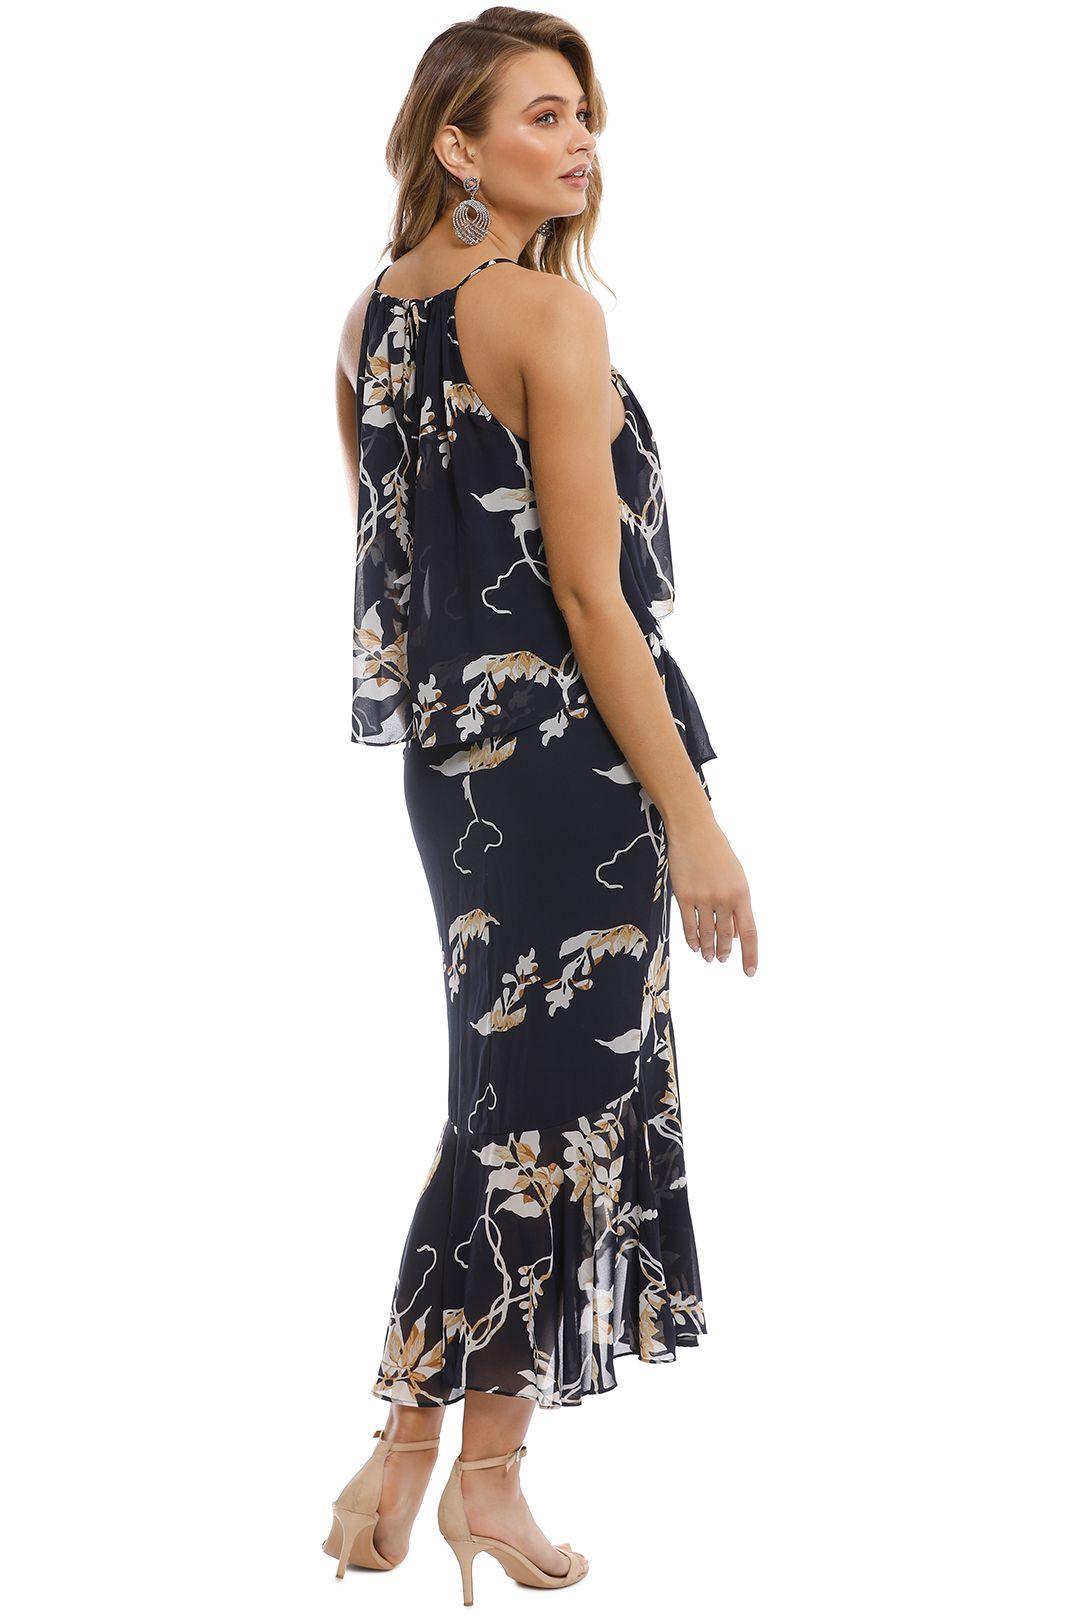 Shona Joy - Curacao Cross Frill Midi Dress - Print - Back